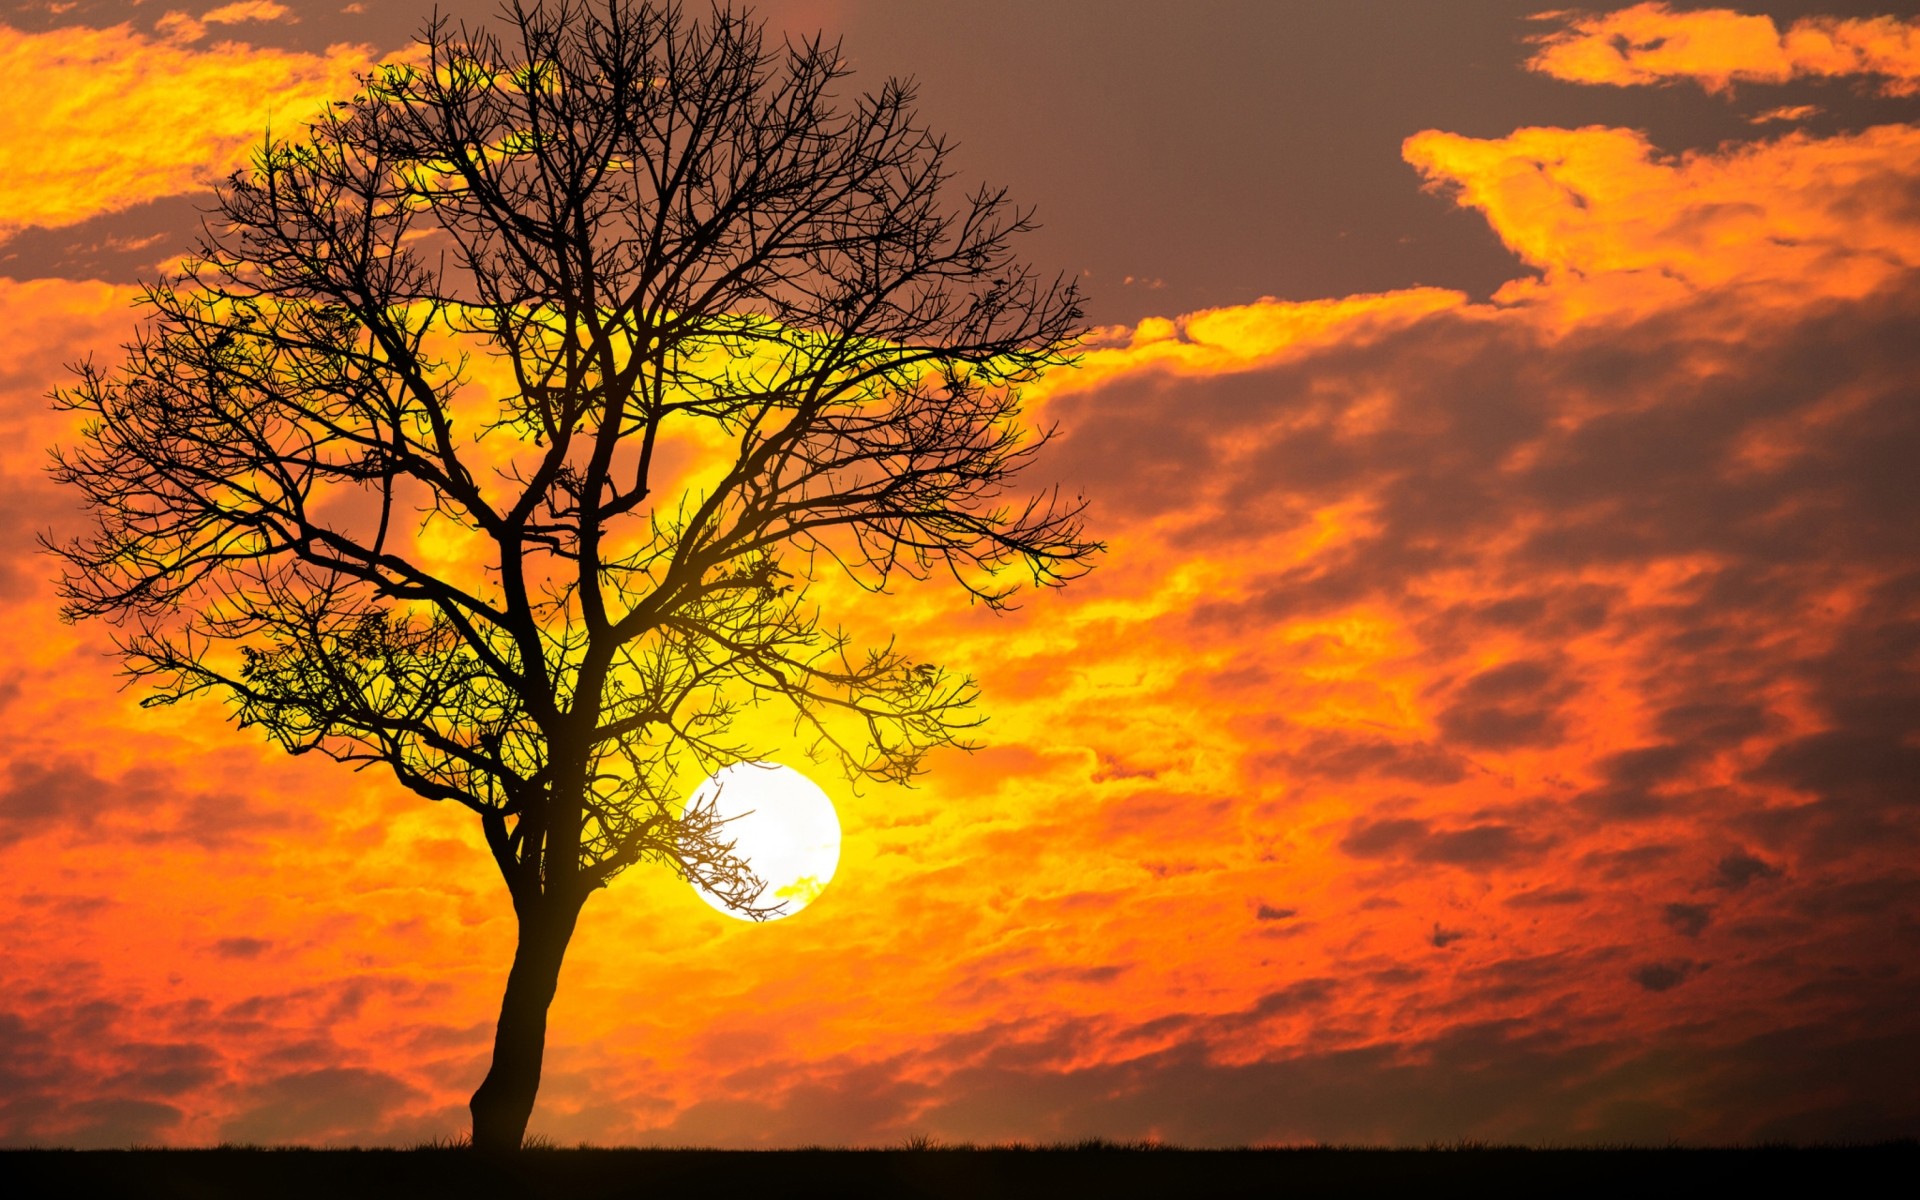 Скачать обои бесплатно Небо, Солнце, Силуэт, Дерево, Жёлтый, Земля/природа, Закат Солнца, Оранжевый Цвет) картинка на рабочий стол ПК